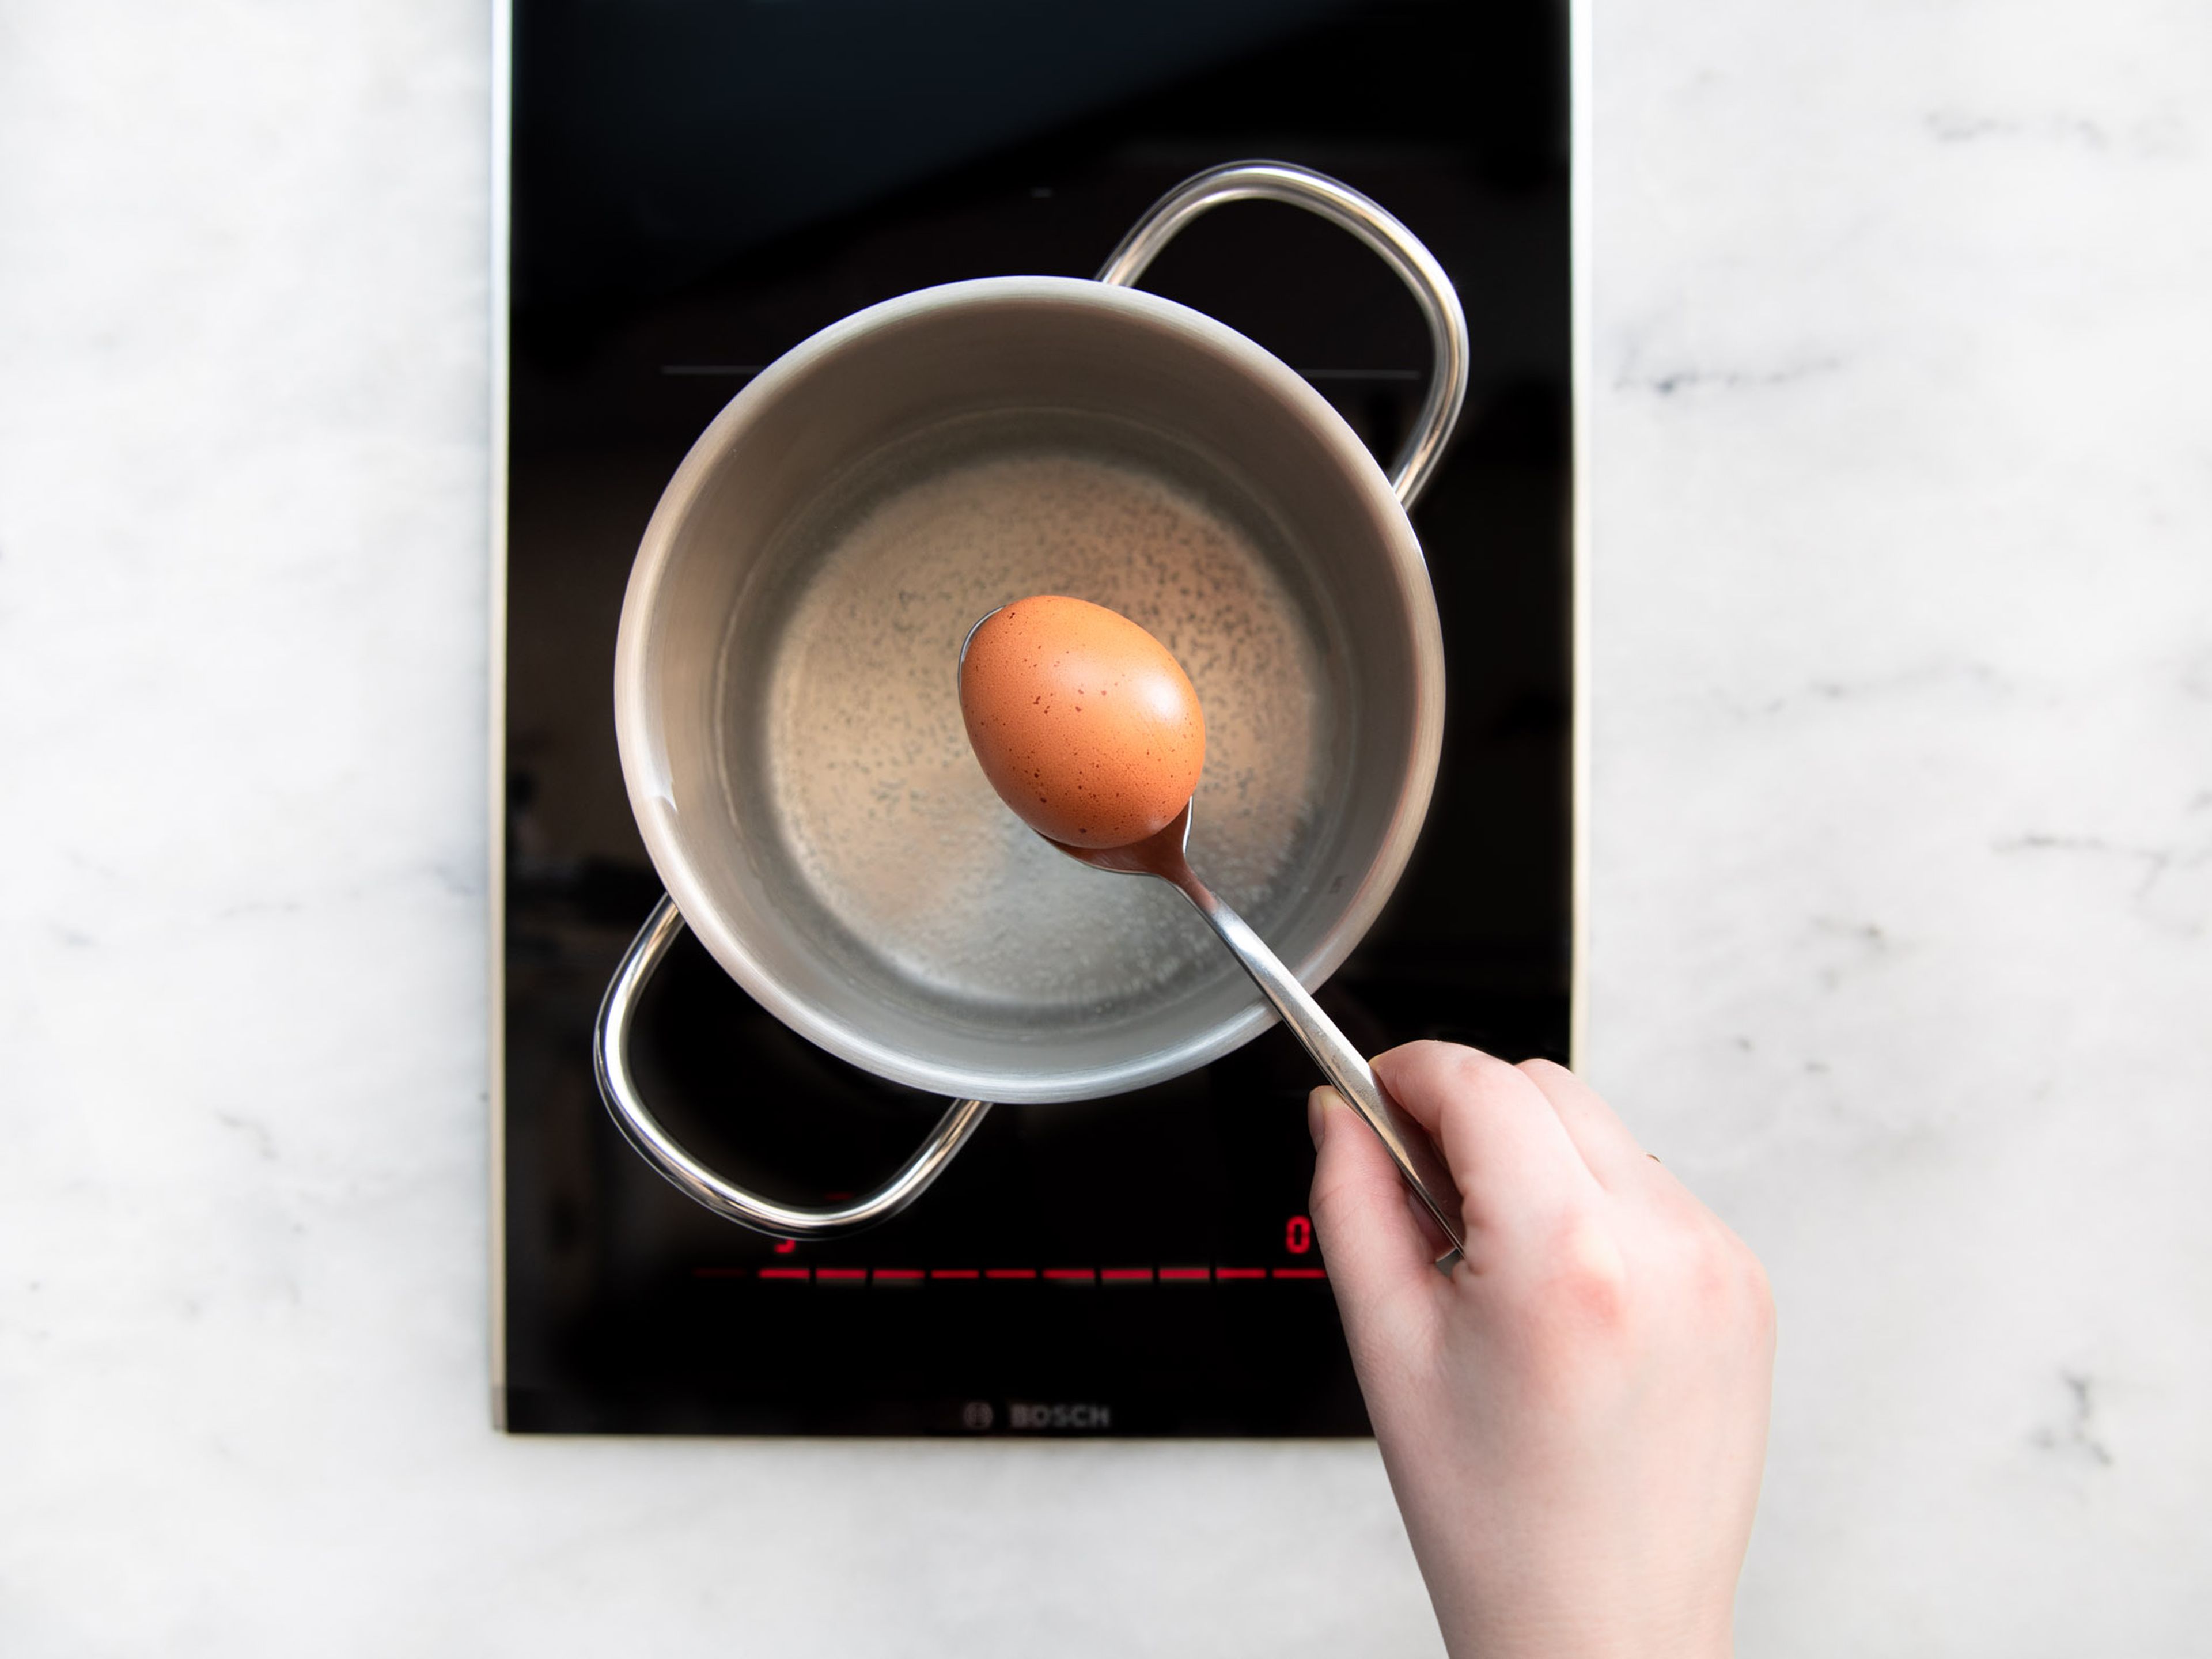 Wasser in einem kleinen Topf zum Kochen bringen. Mit Salz würzen und Eier dazugeben. Für ca. 9 min. kochen lassen, dann Eier mit einem Löffel herausnehmen und in eine Schüssel mit kaltem Wasser geben. Sobald sie kalt genug sind, Eier schälen und halbieren.